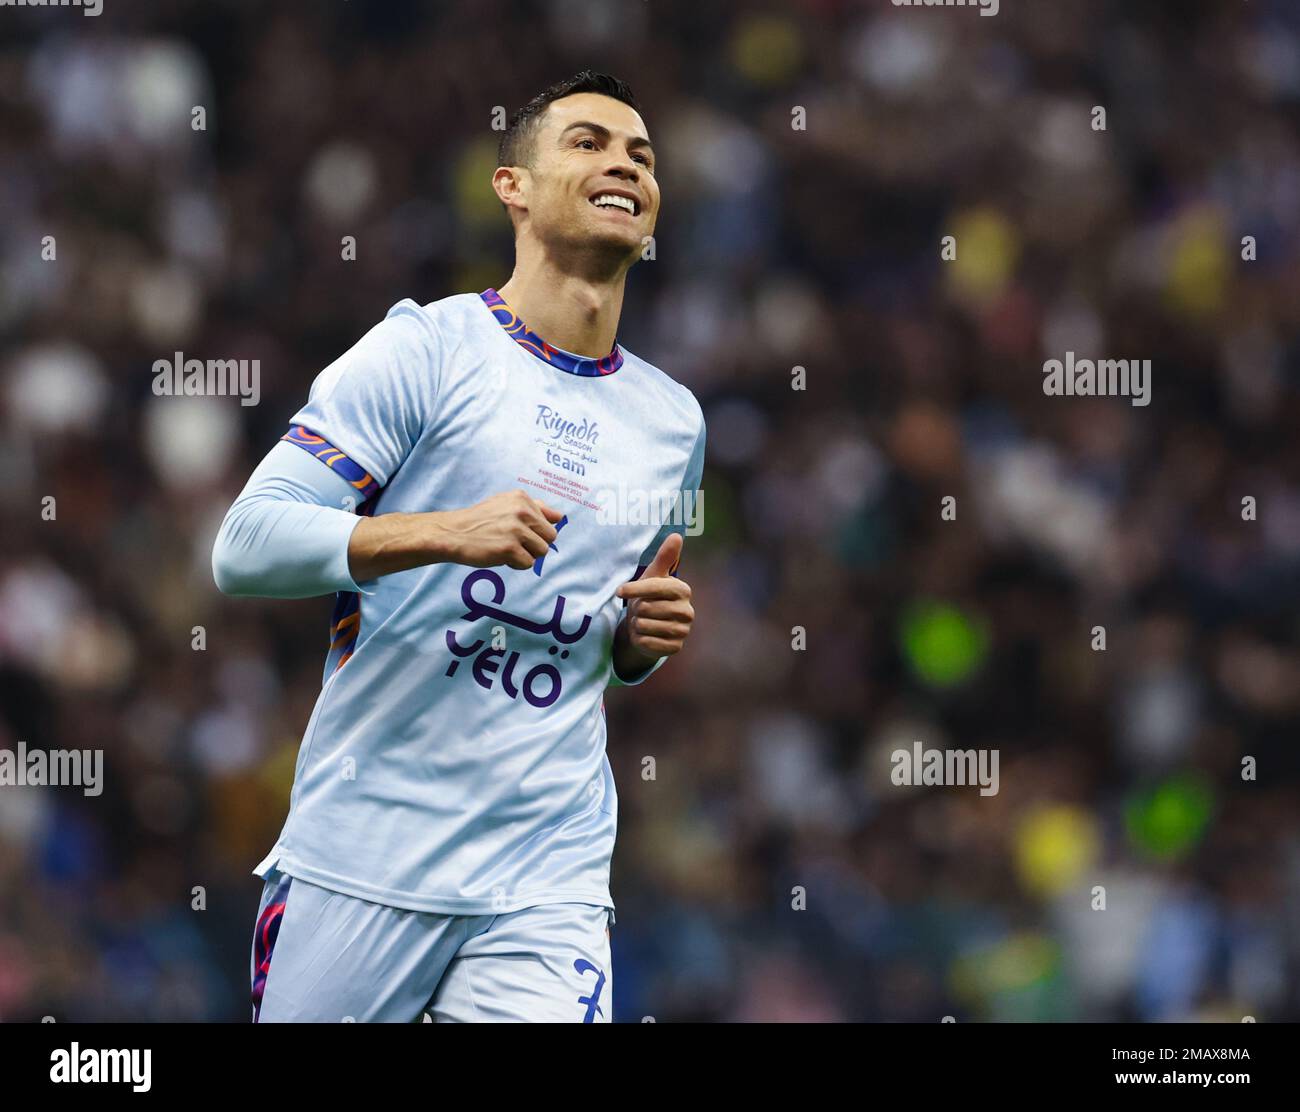 Riyad, Arabie Saoudite. 19th janvier 2023. Cristiano Ronaldo de l'équipe de saison de Riyad réagit lors du match de la coupe de saison de Riyad entre l'équipe de saison de Riyad et le FC Paris Saint-Germain au stade international du Roi Fahd à Riyad, en Arabie Saoudite, le 19 janvier 2023. Credit: Khalid Abdulfaattah/Xinhua/Alamy Live News Banque D'Images